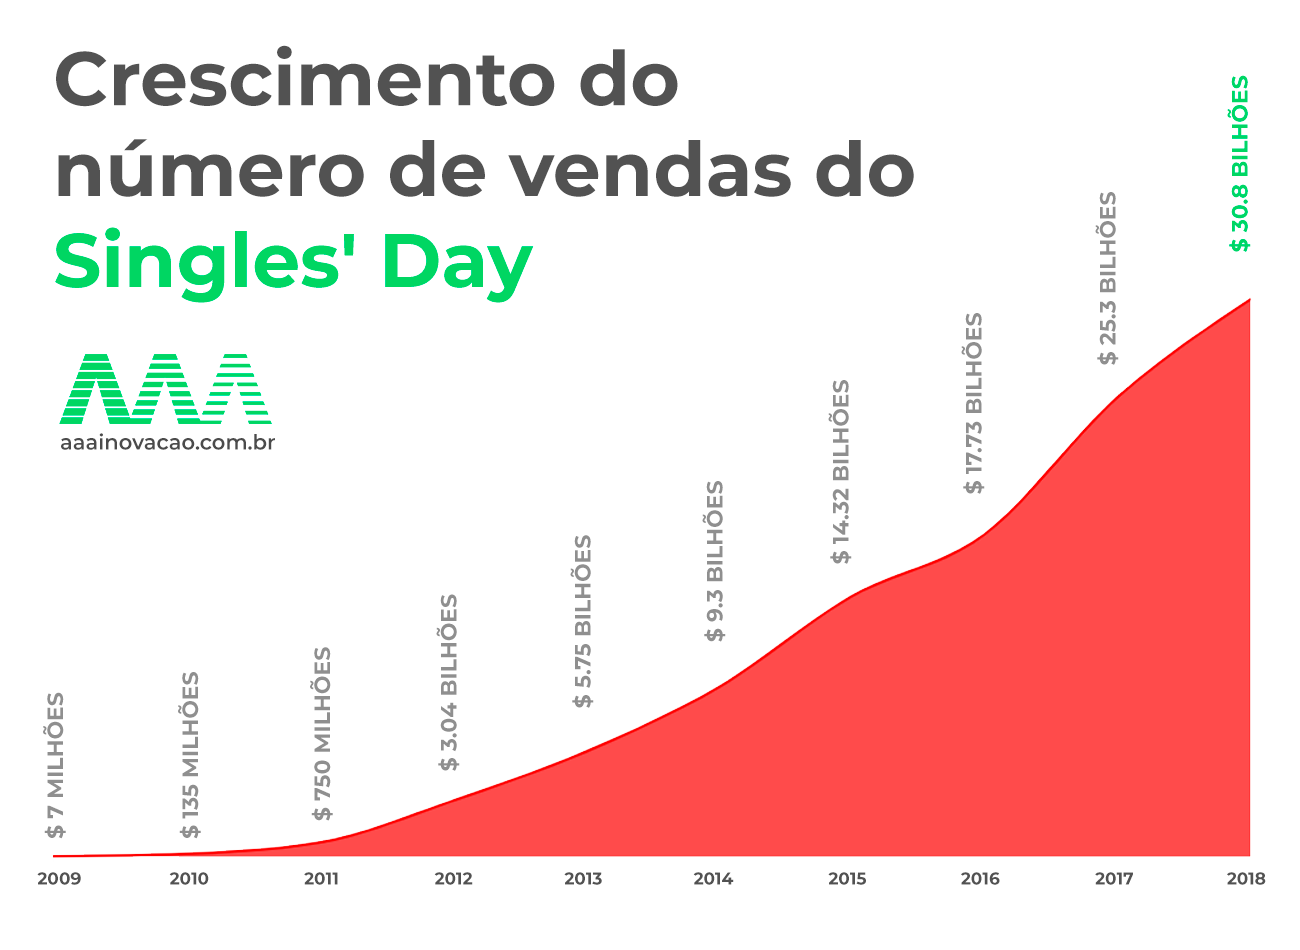 Entre 2009 e 2018, o Singles’ Day cresceu 4400 vezes em faturamento.